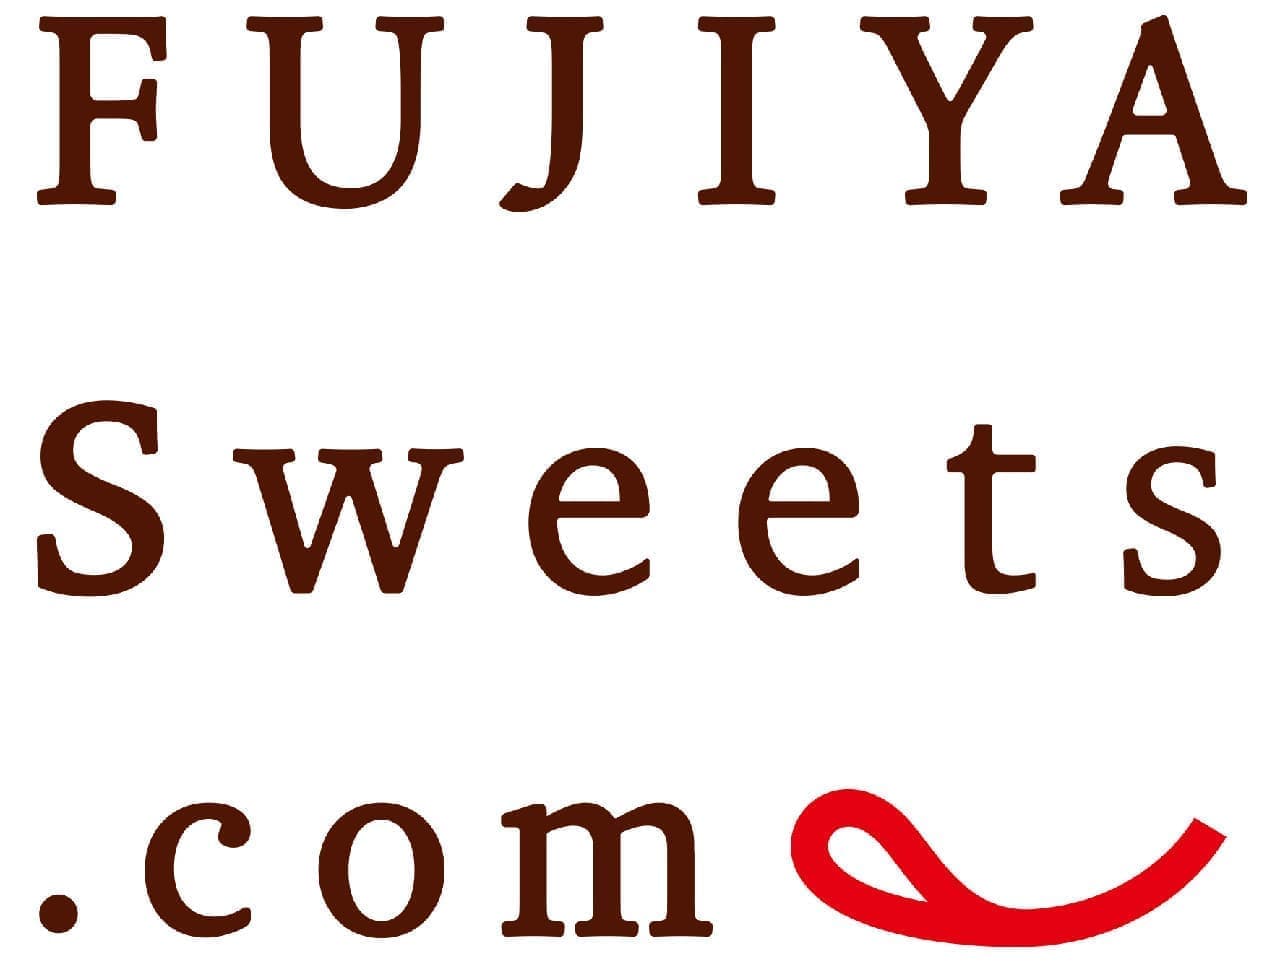 FUJIYA Sweets.com opens.